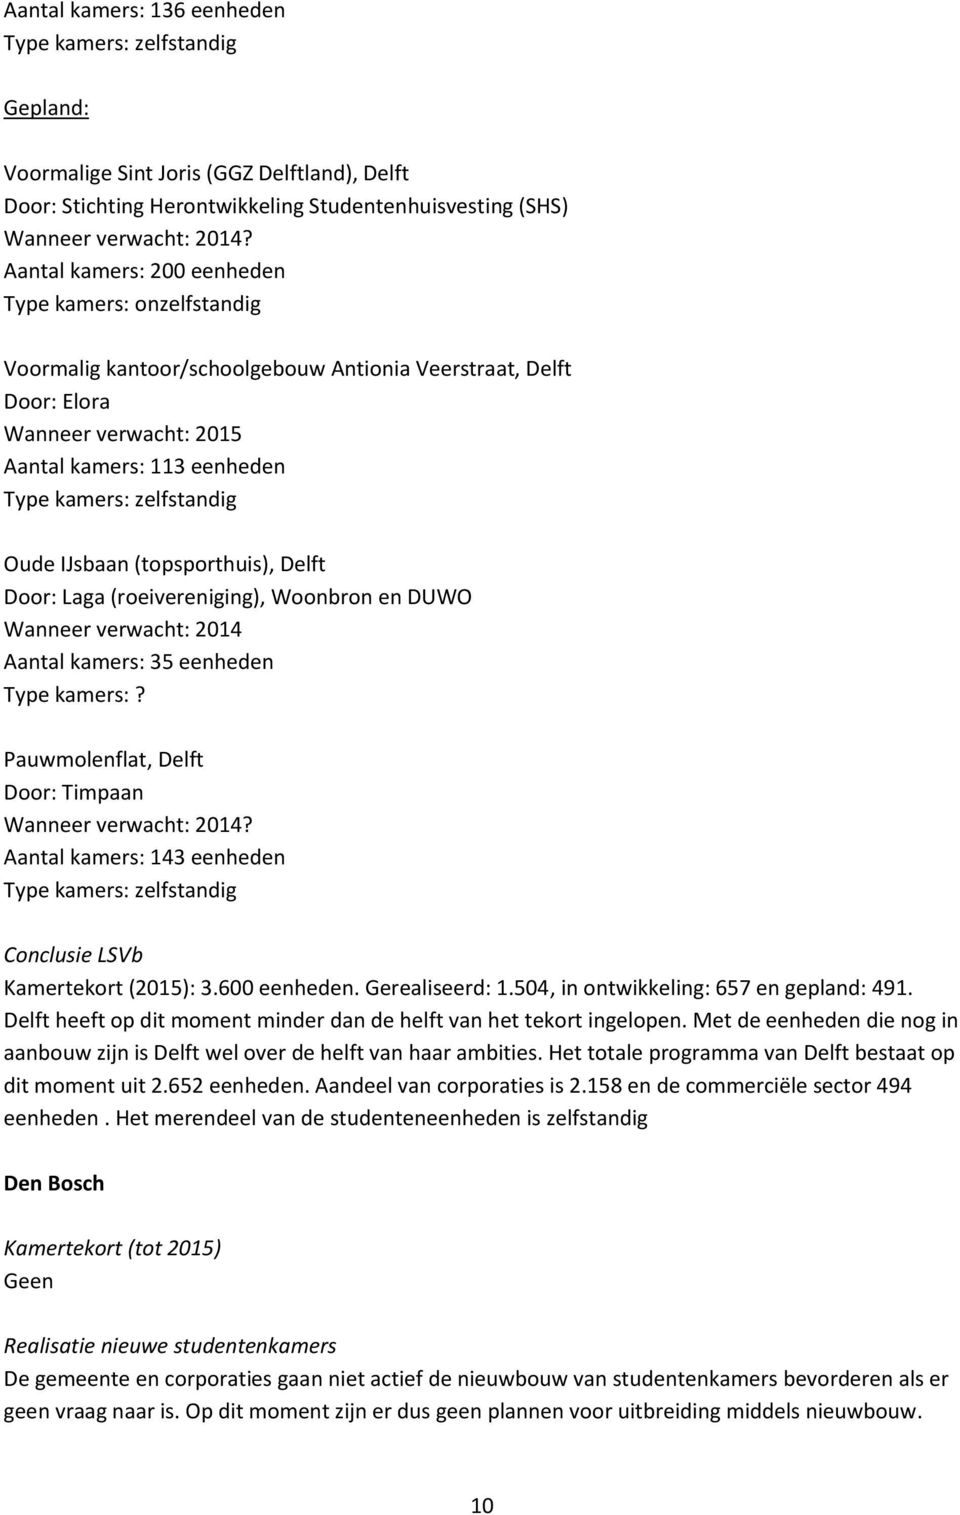 (topsporthuis), Delft Door: Laga (roeivereniging), Woonbron en DUWO Wanneer verwacht: 2014 Aantal kamers: 35 eenheden Type kamers:? Pauwmolenflat, Delft Door: Timpaan Wanneer verwacht: 2014?